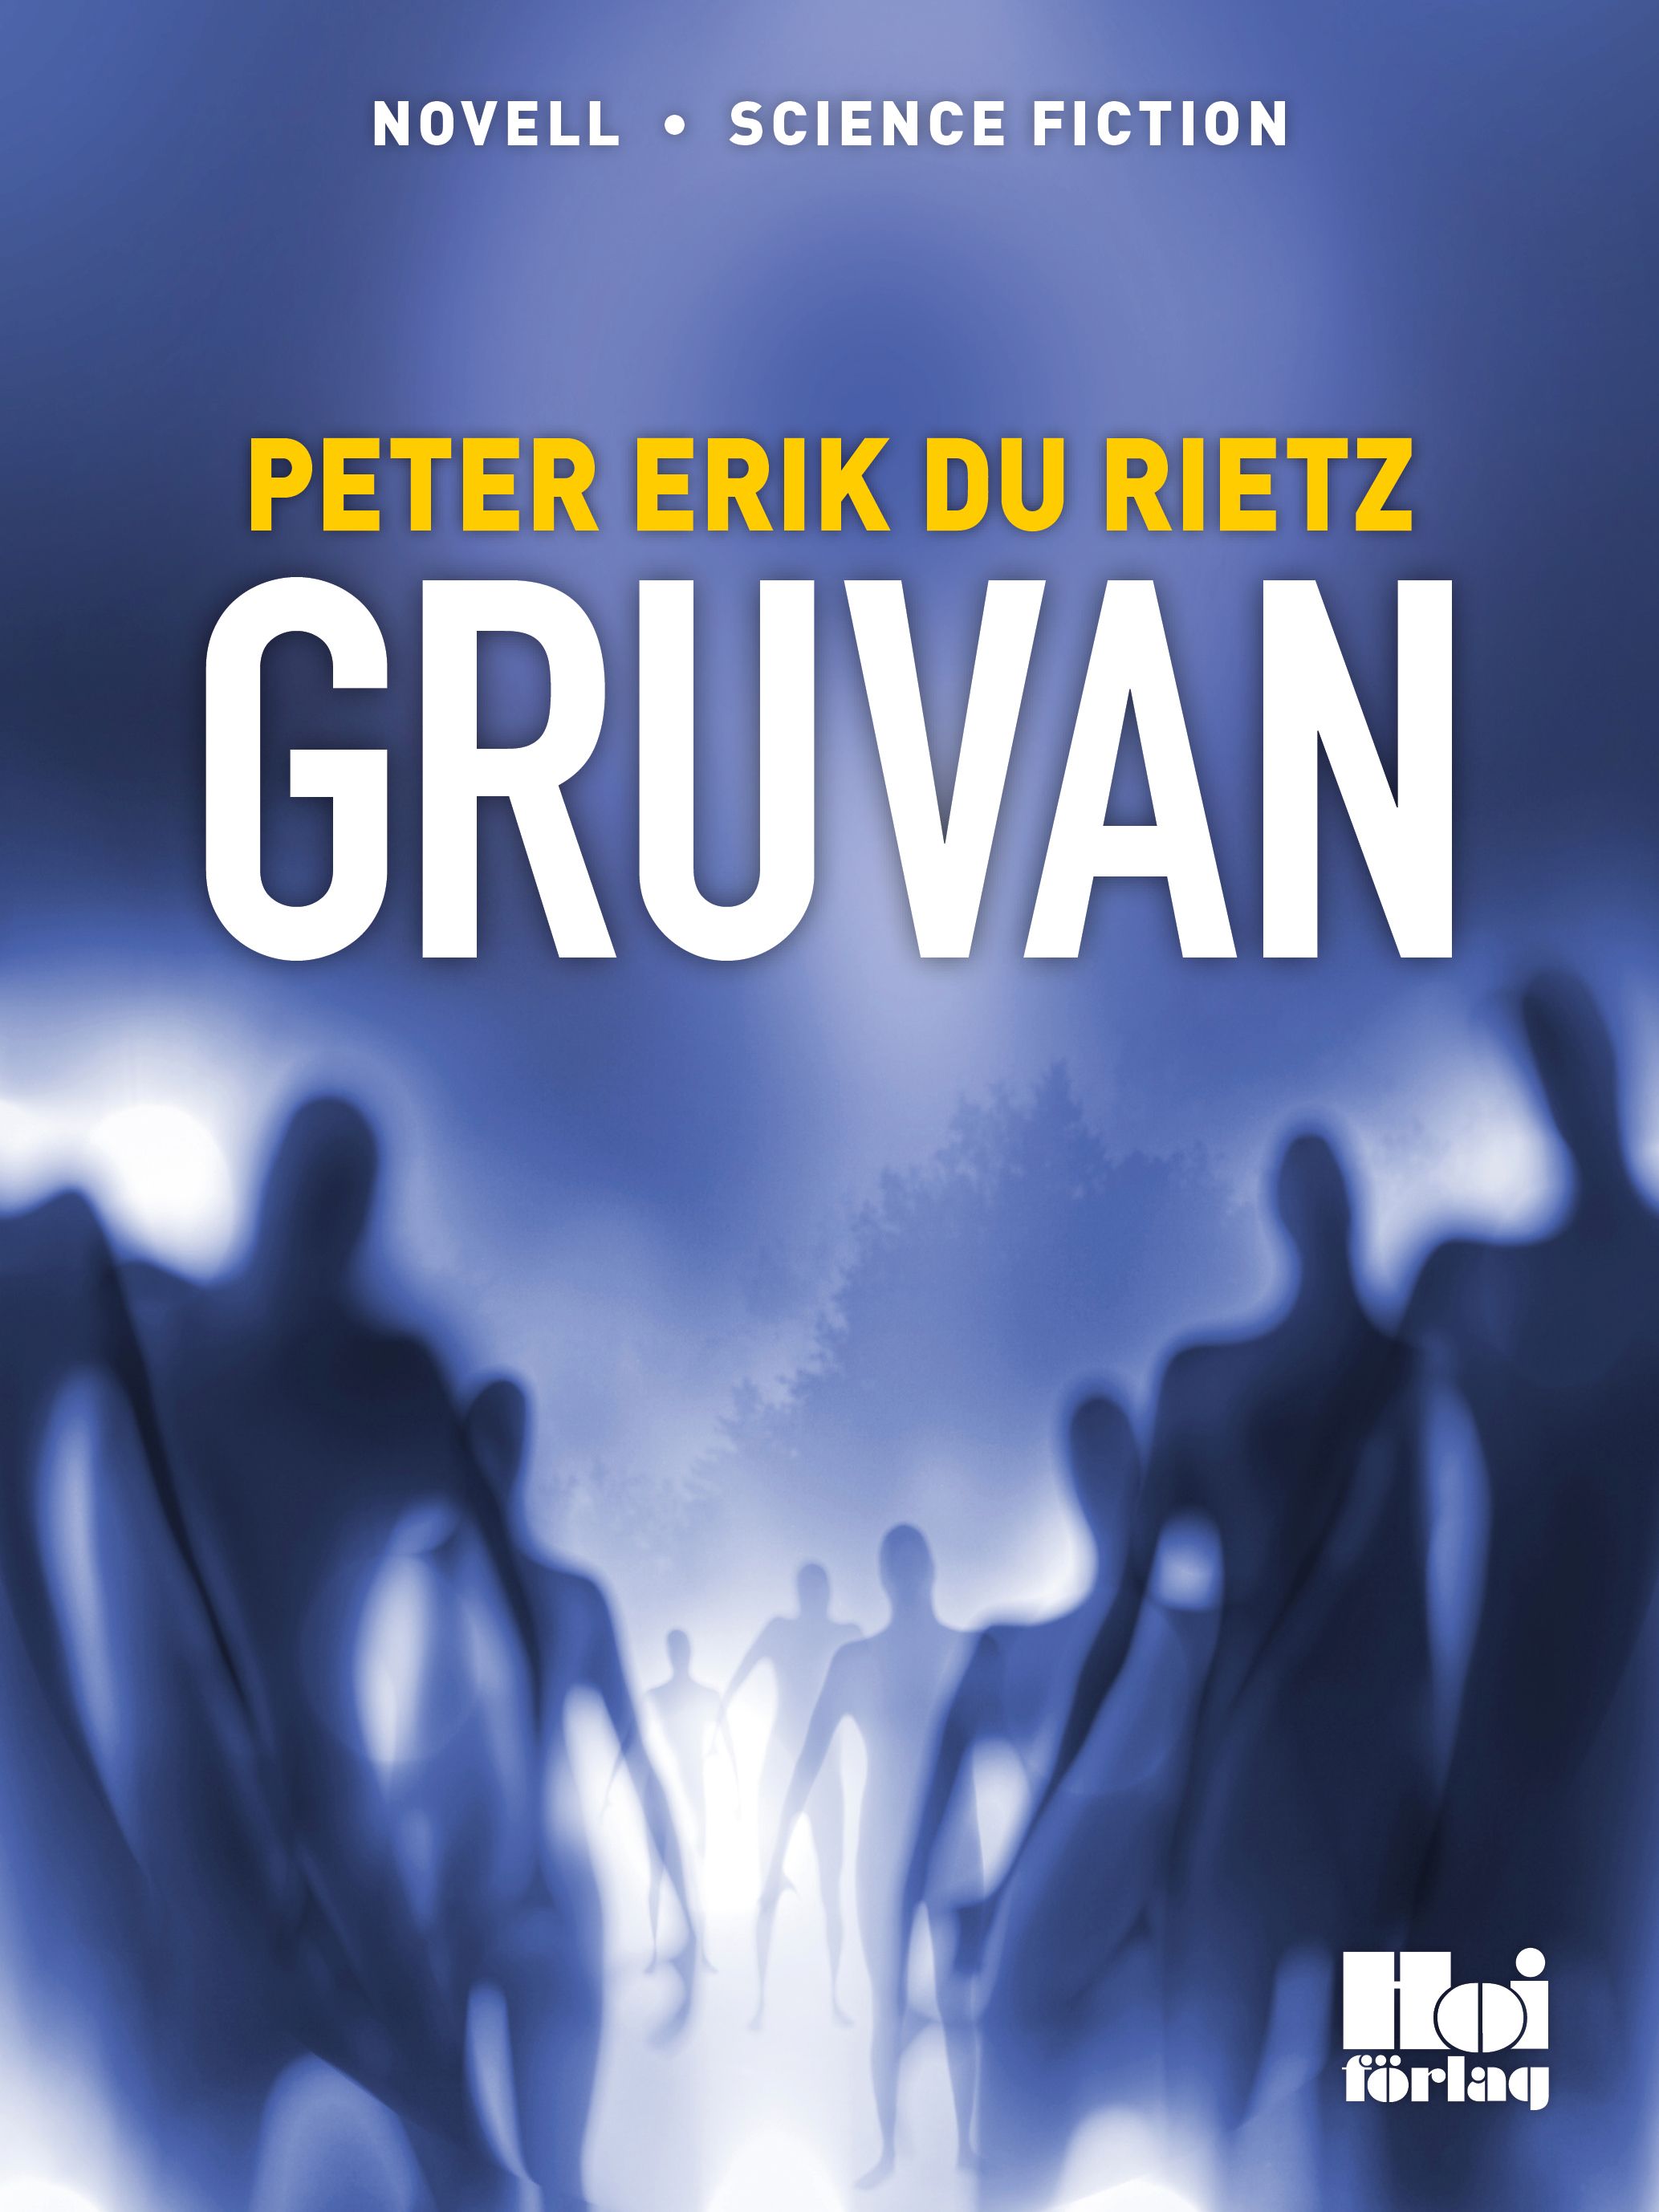 Gruvan, eBook by Peter Erik Du Rietz